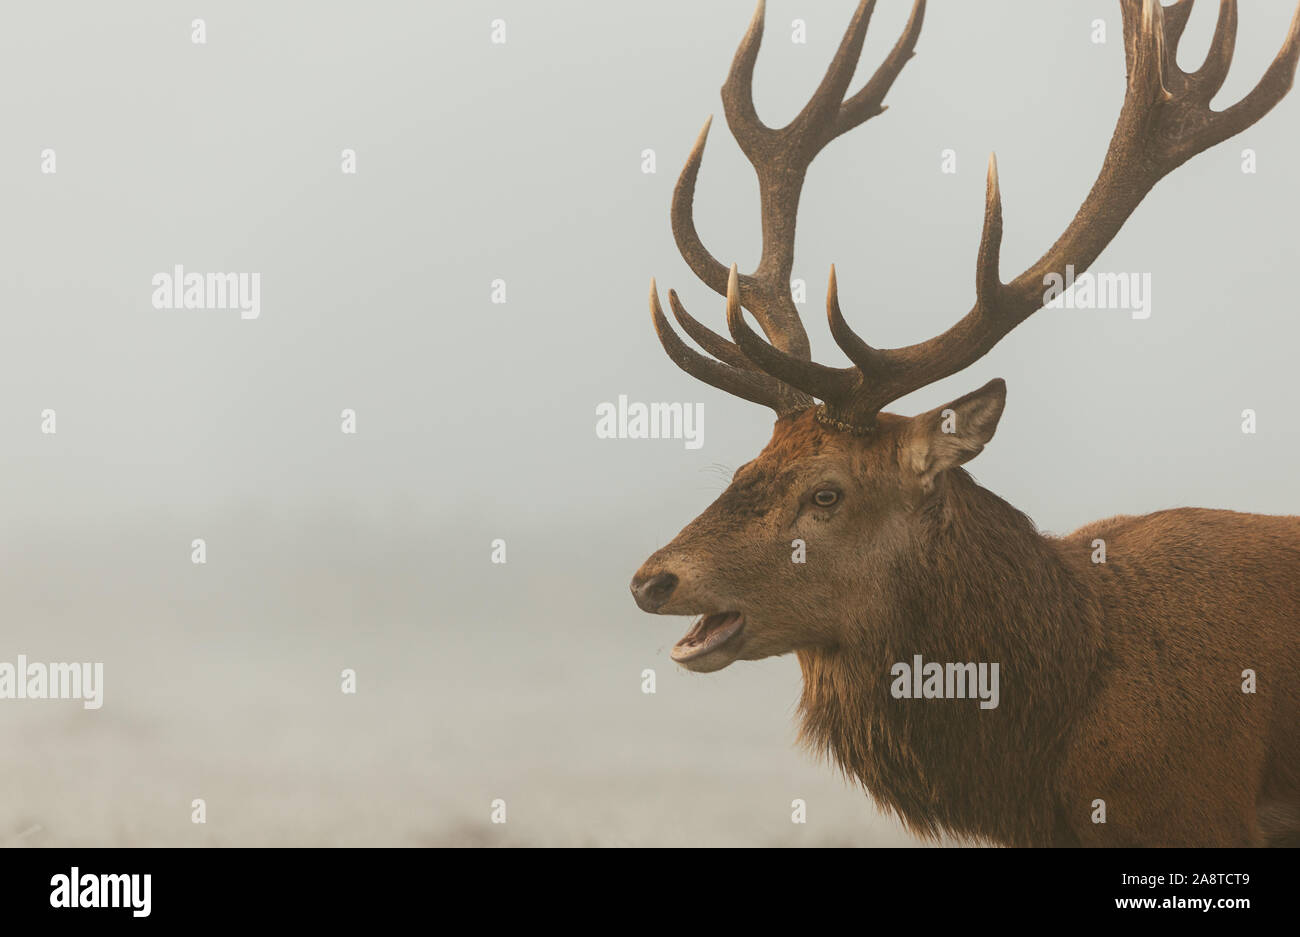 Une famille red deer stag dans les bois de Bushy Park, Londres Angleterre, pris un matin froid et brumeux de l'automne au cours de saison du rut Banque D'Images